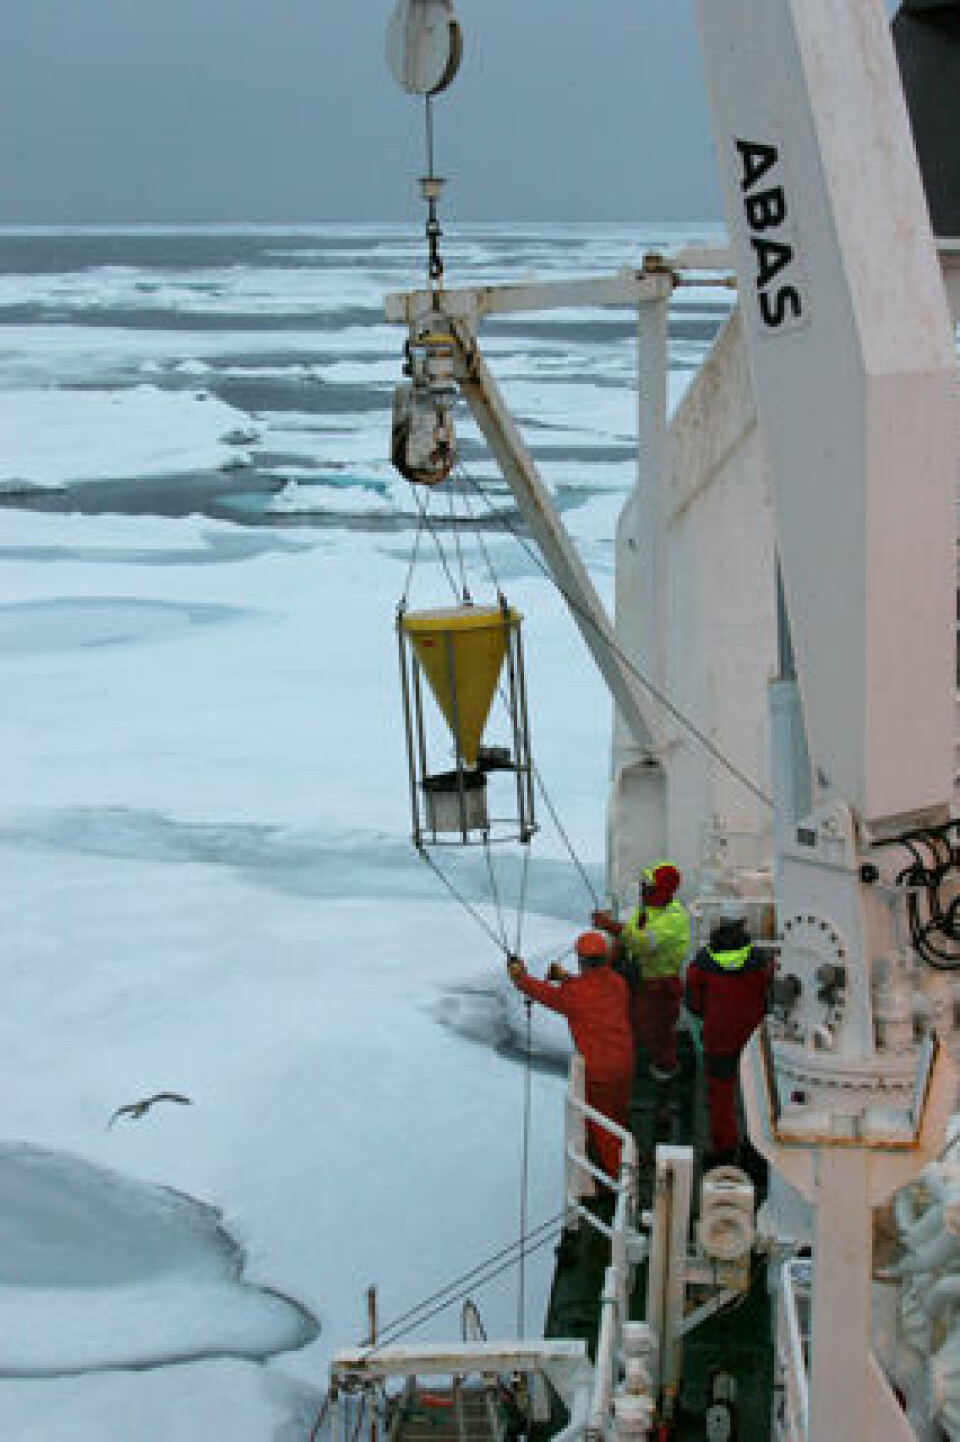 Forskerne henter inn datautstyr i Rijpfjorden på Nordaustlandet, Svalbard. (Foto: Geir Johnsen)